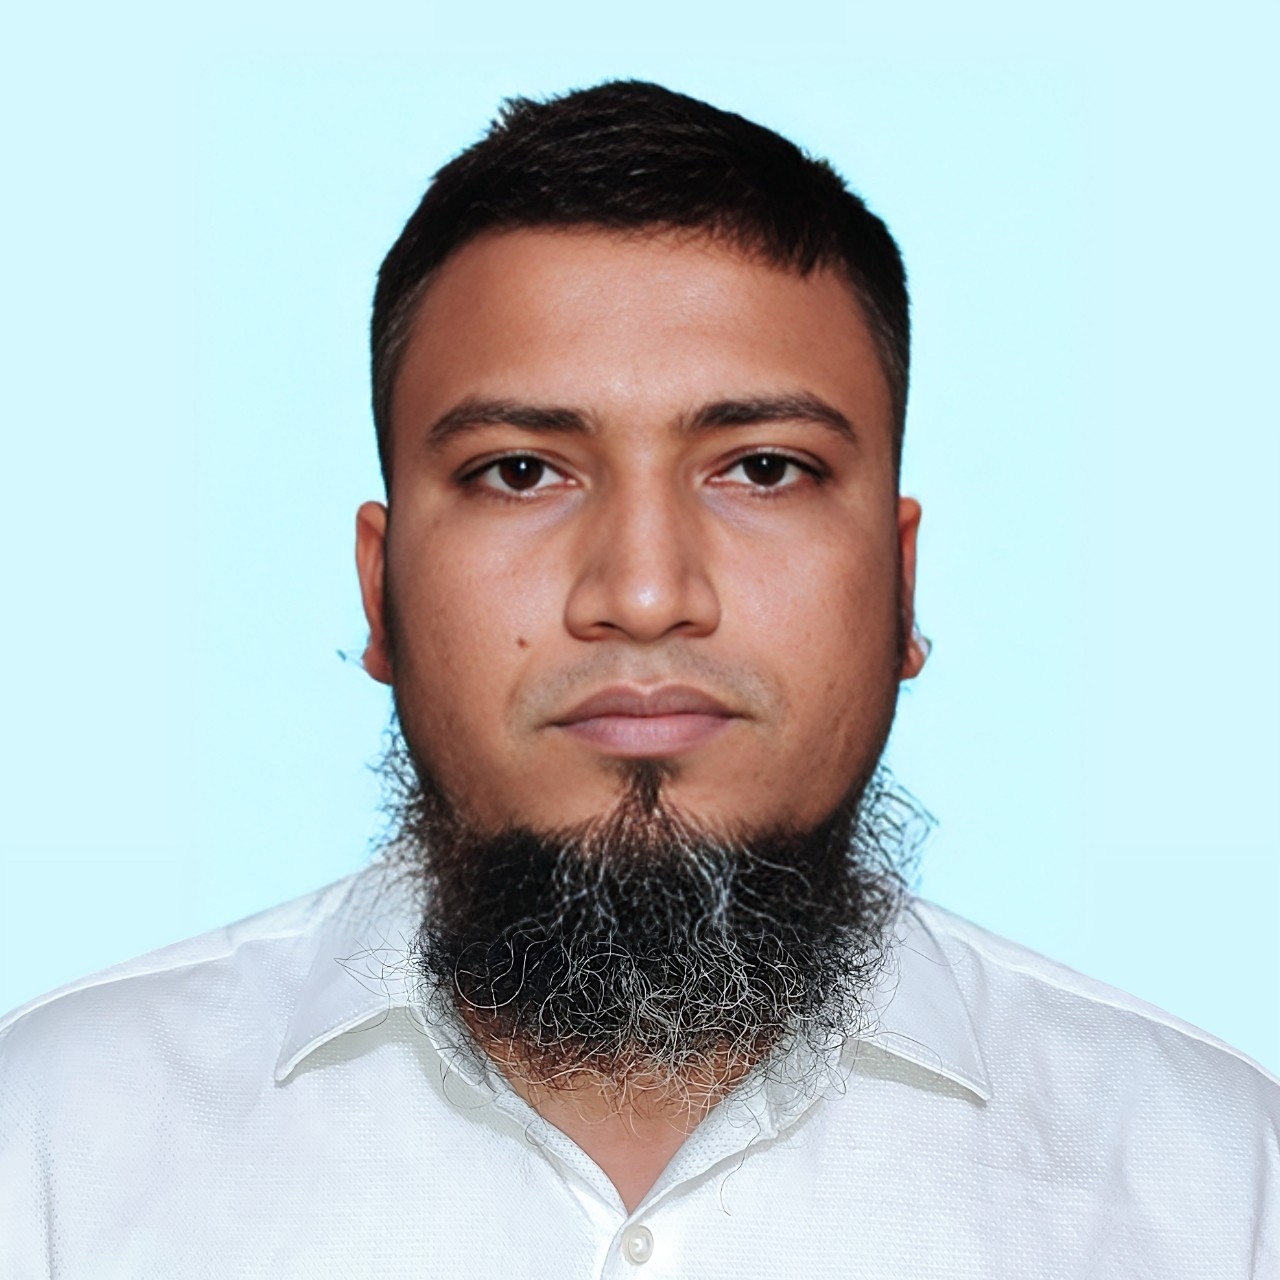 Mohammad Mizanur Rahman Badol